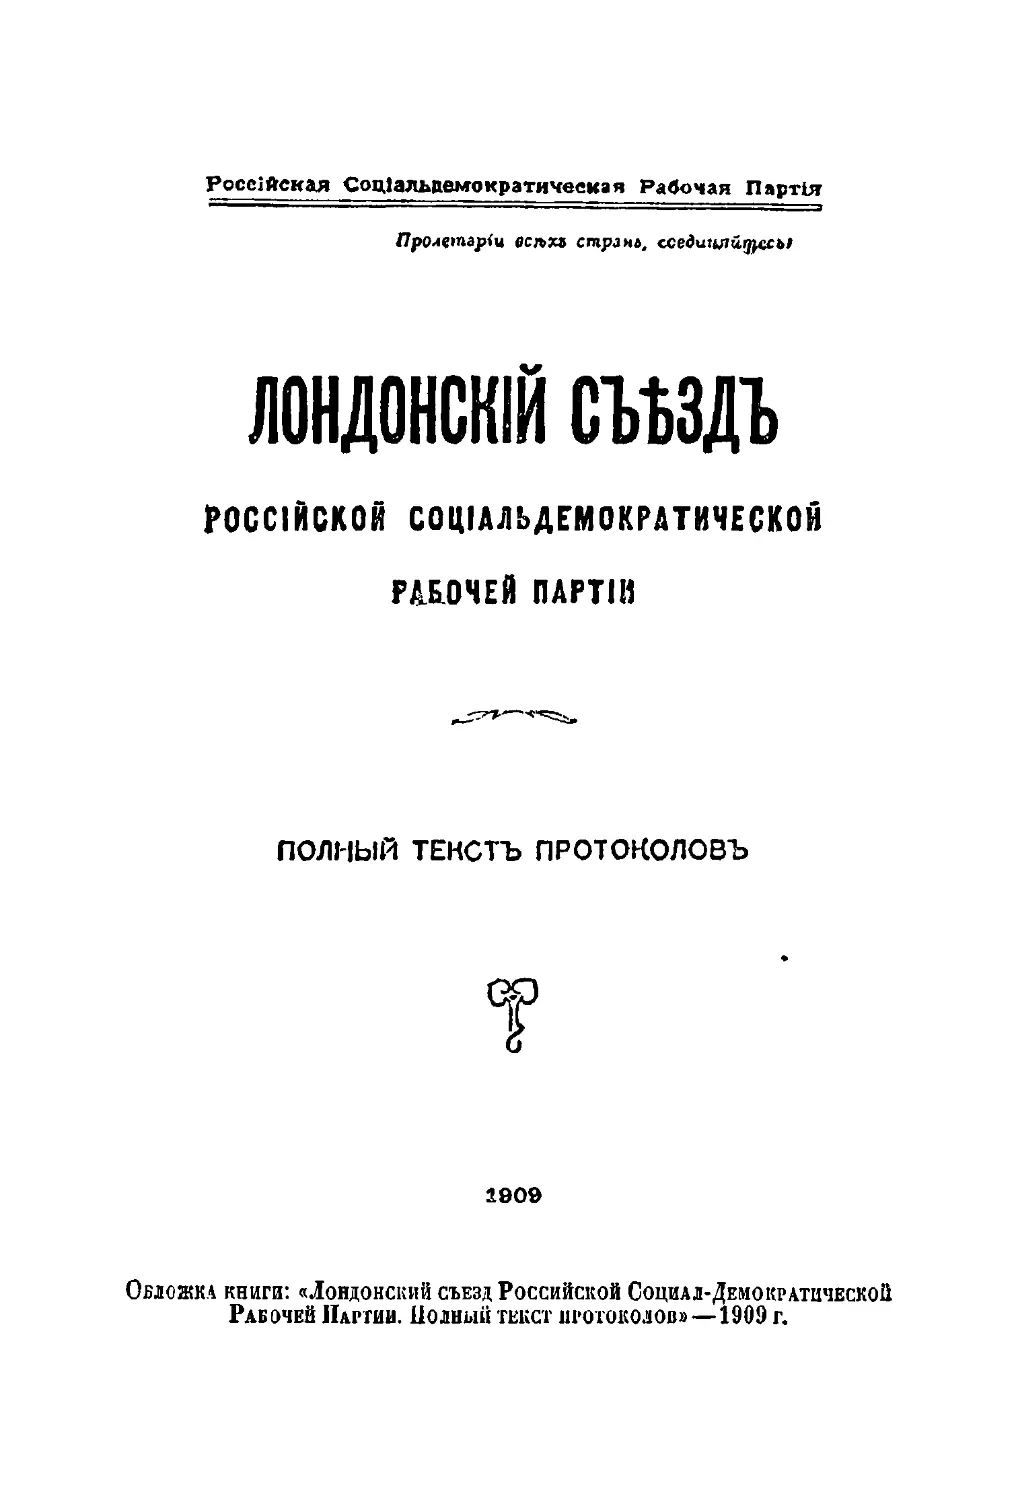 Обложка книги: «Лондонский съезд Р. С.-Д. Р. 11. Полный текст протоколов» — 1909 г. 2